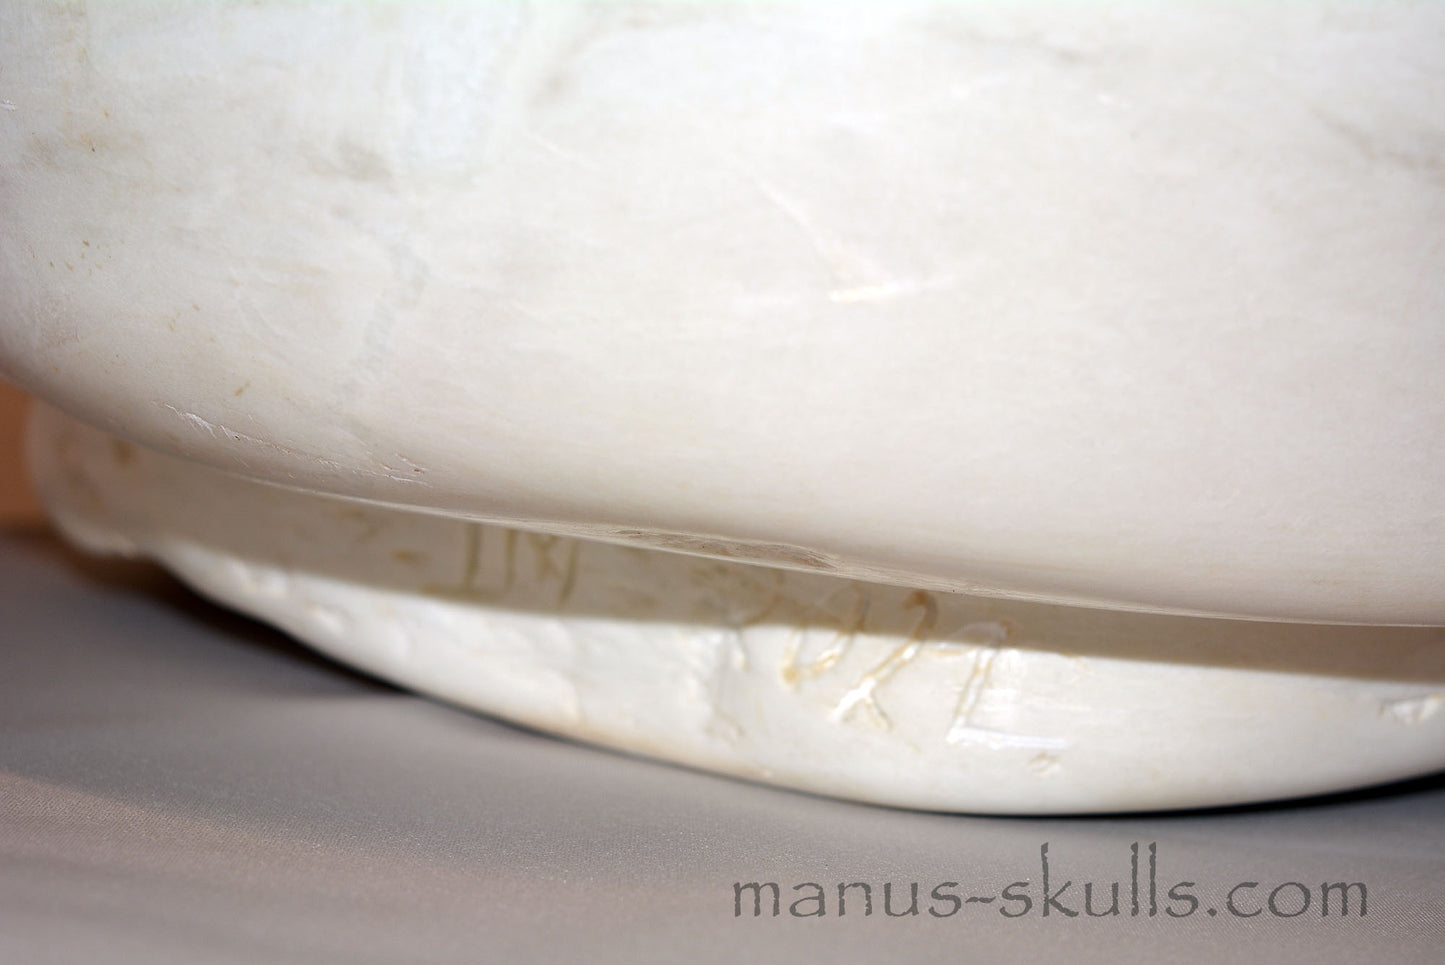 Monumental White Steatite Evolian Skull #48